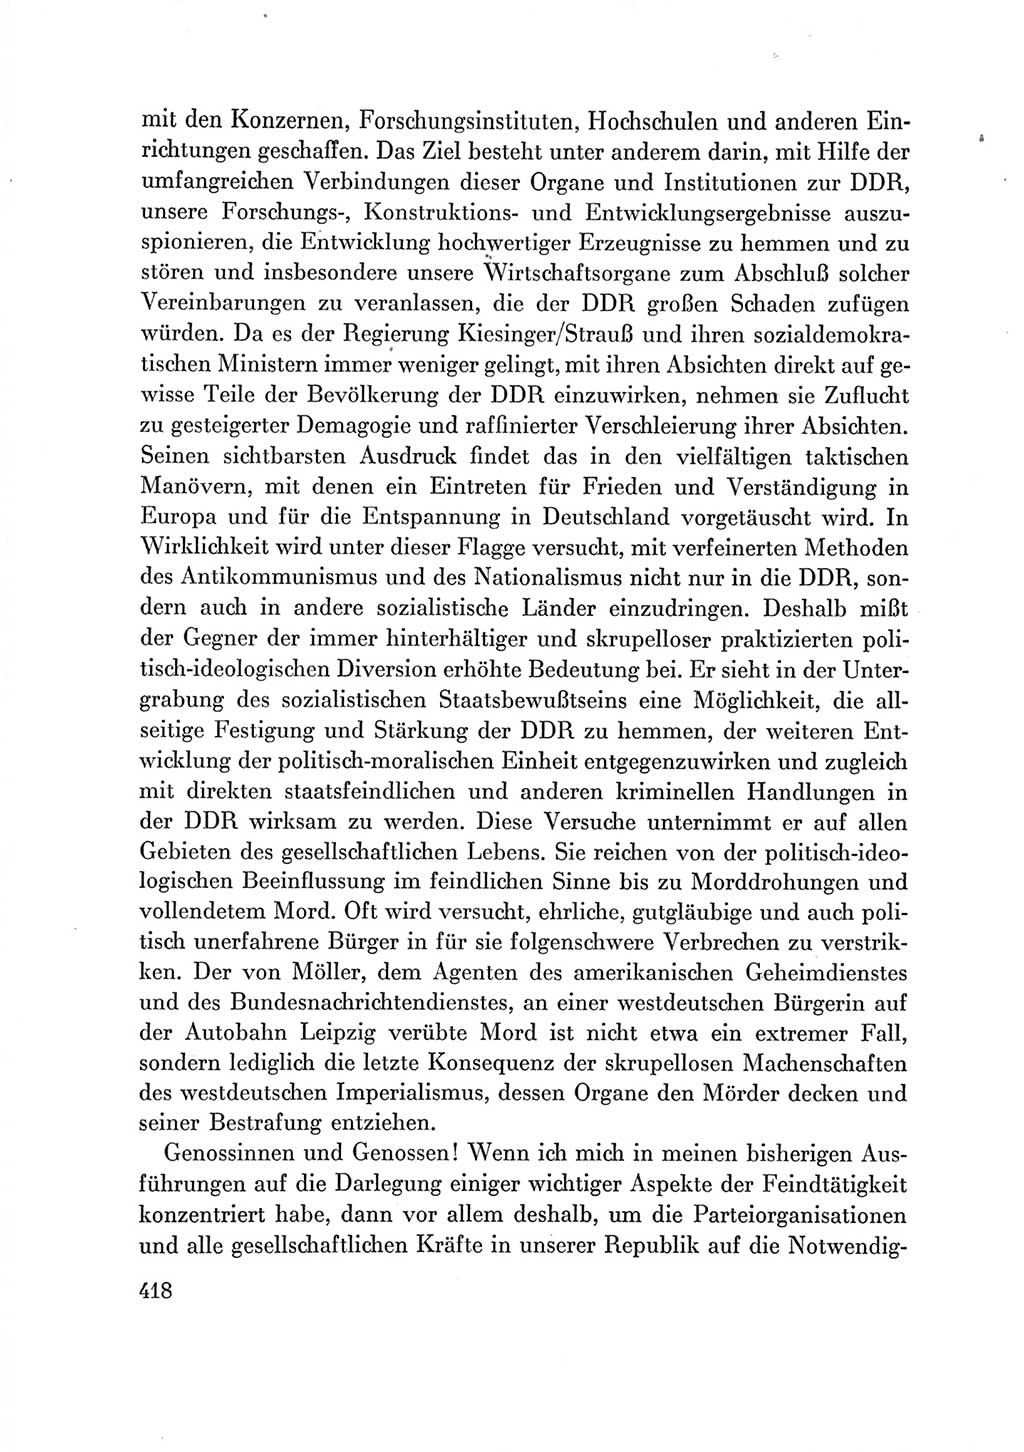 Protokoll der Verhandlungen des Ⅶ. Parteitages der Sozialistischen Einheitspartei Deutschlands (SED) [Deutsche Demokratische Republik (DDR)] 1967, Band Ⅲ, Seite 418 (Prot. Verh. Ⅶ. PT SED DDR 1967, Bd. Ⅲ, S. 418)